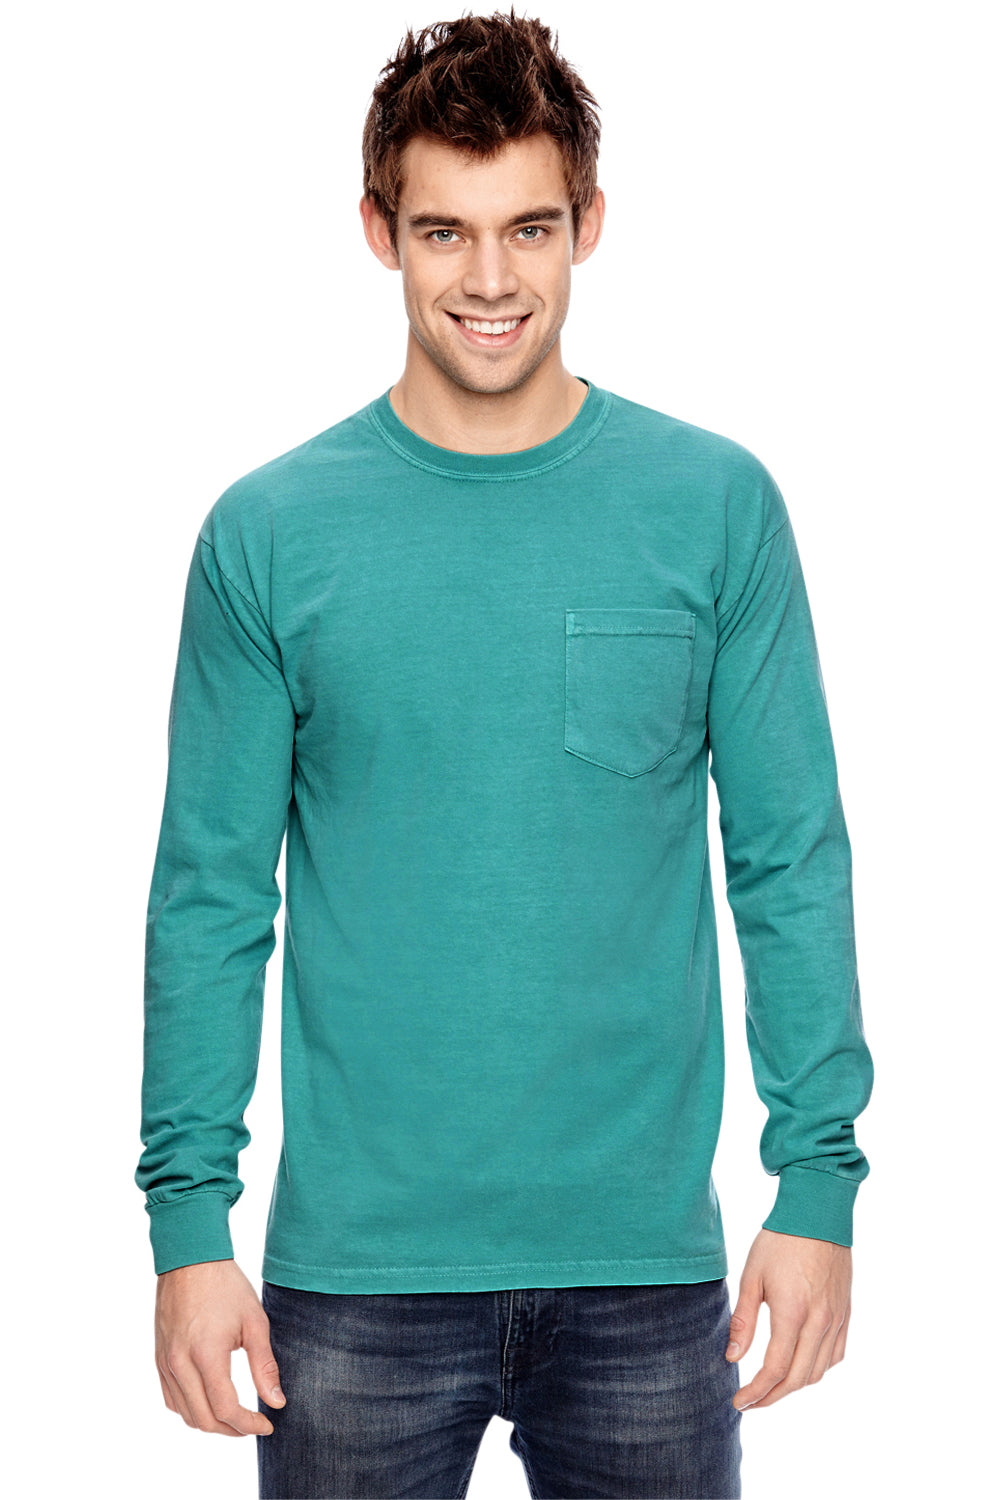 Comfort Colors C4410 Mens Long Sleeve Crewneck T-Shirt w/ Pocket Seafoam Green Front